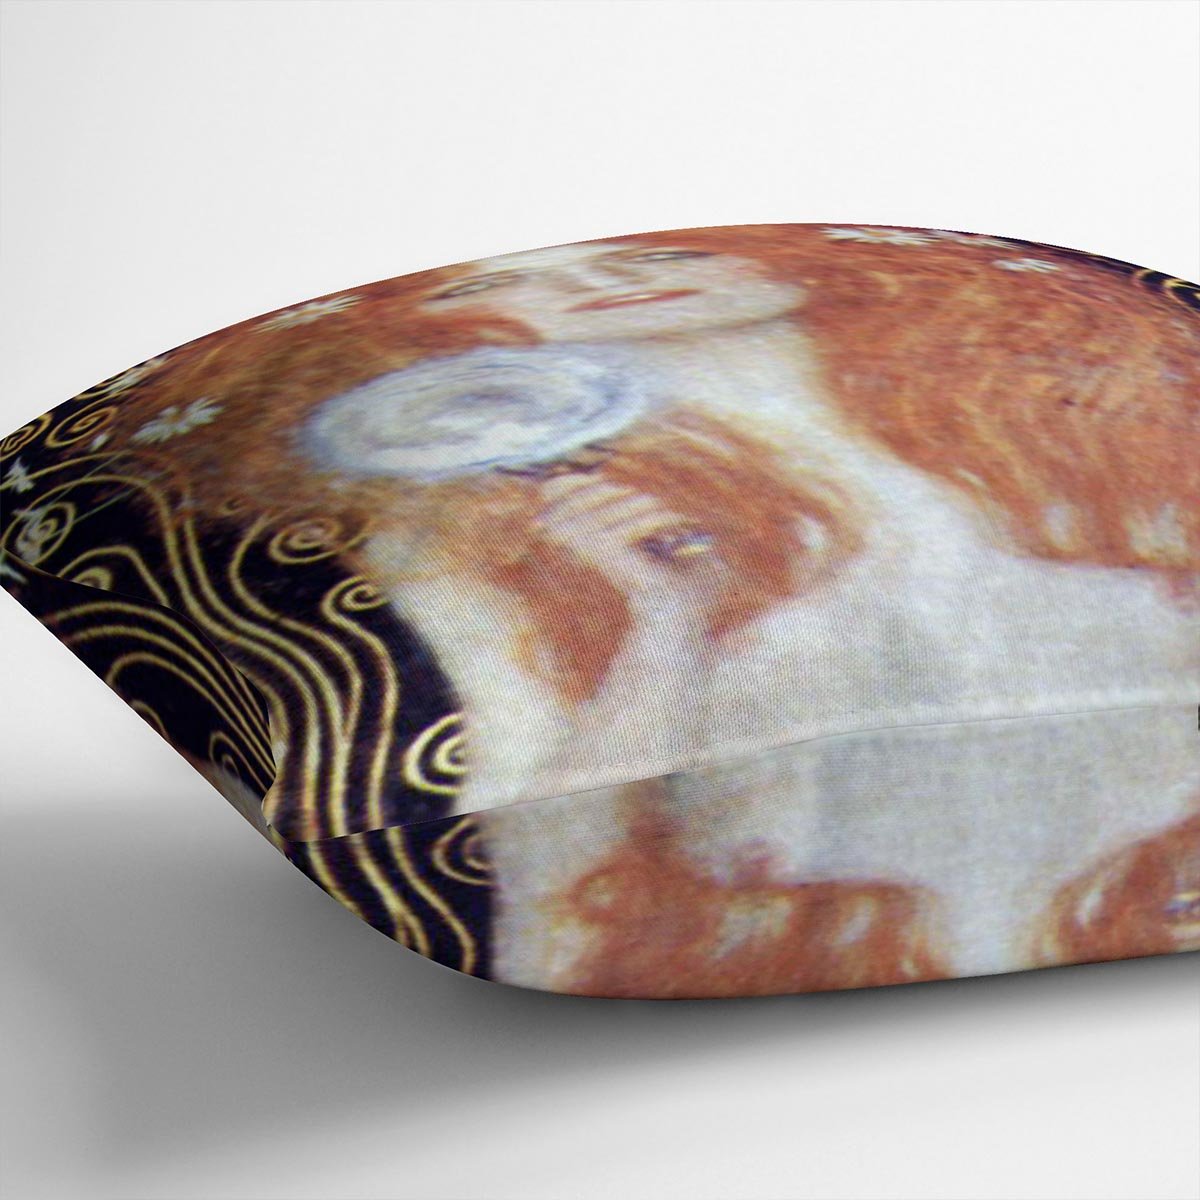 Nuda Veritas Naked Truth by Klimt Throw Pillow